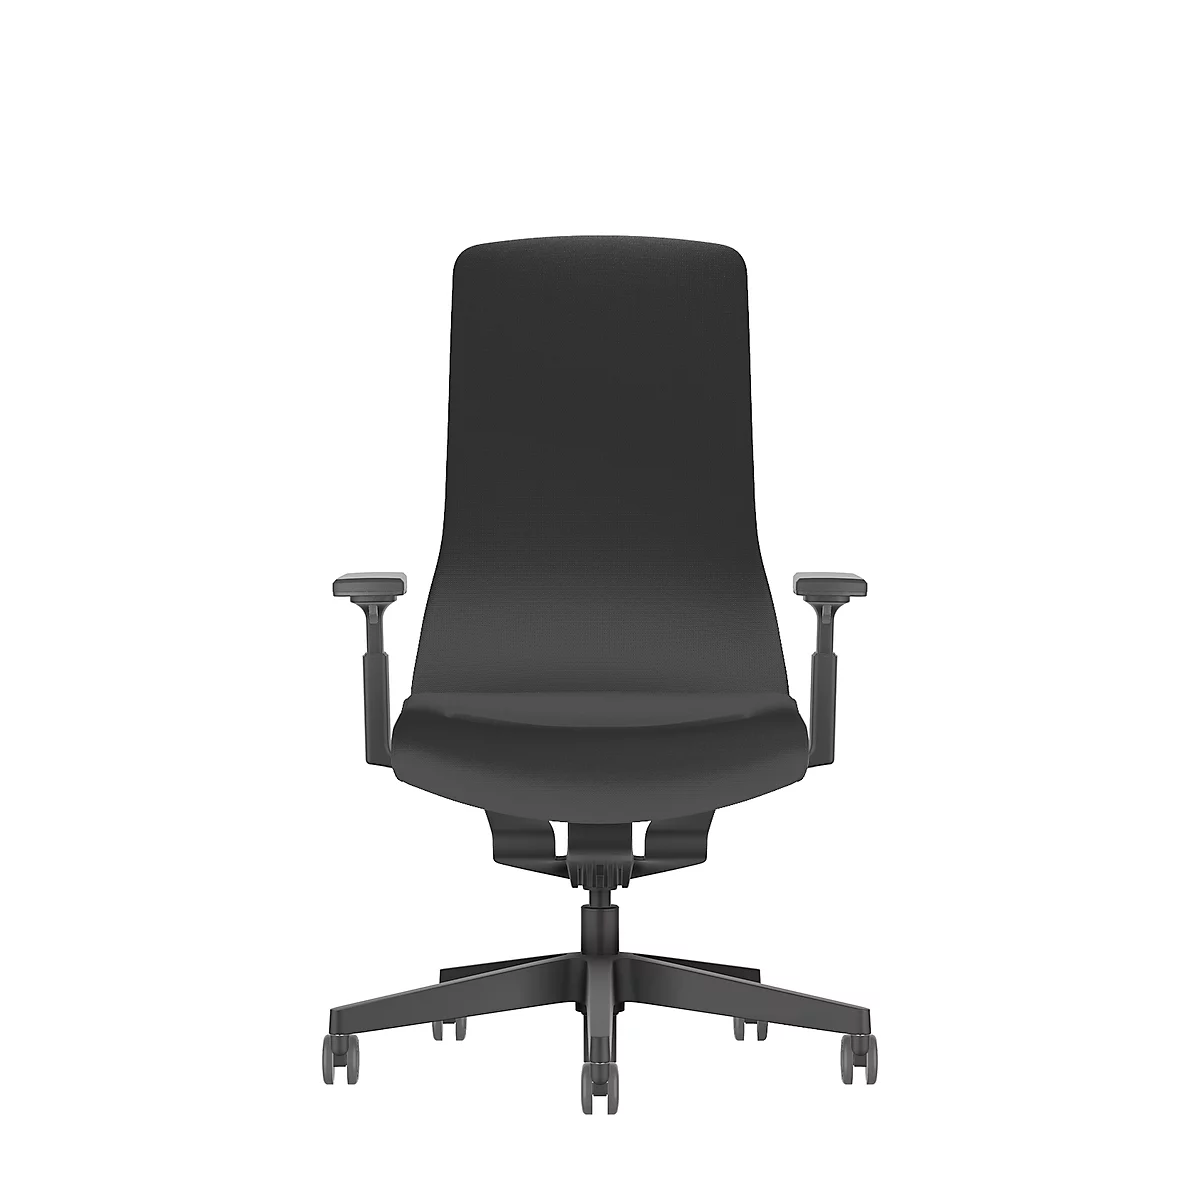 Interstuhl bureaustoel PUREis3, verstelbare armleuningen, 3D auto-synchroonmechanisme, kuipzitting, gestoffeerde rug, zwart/zwart